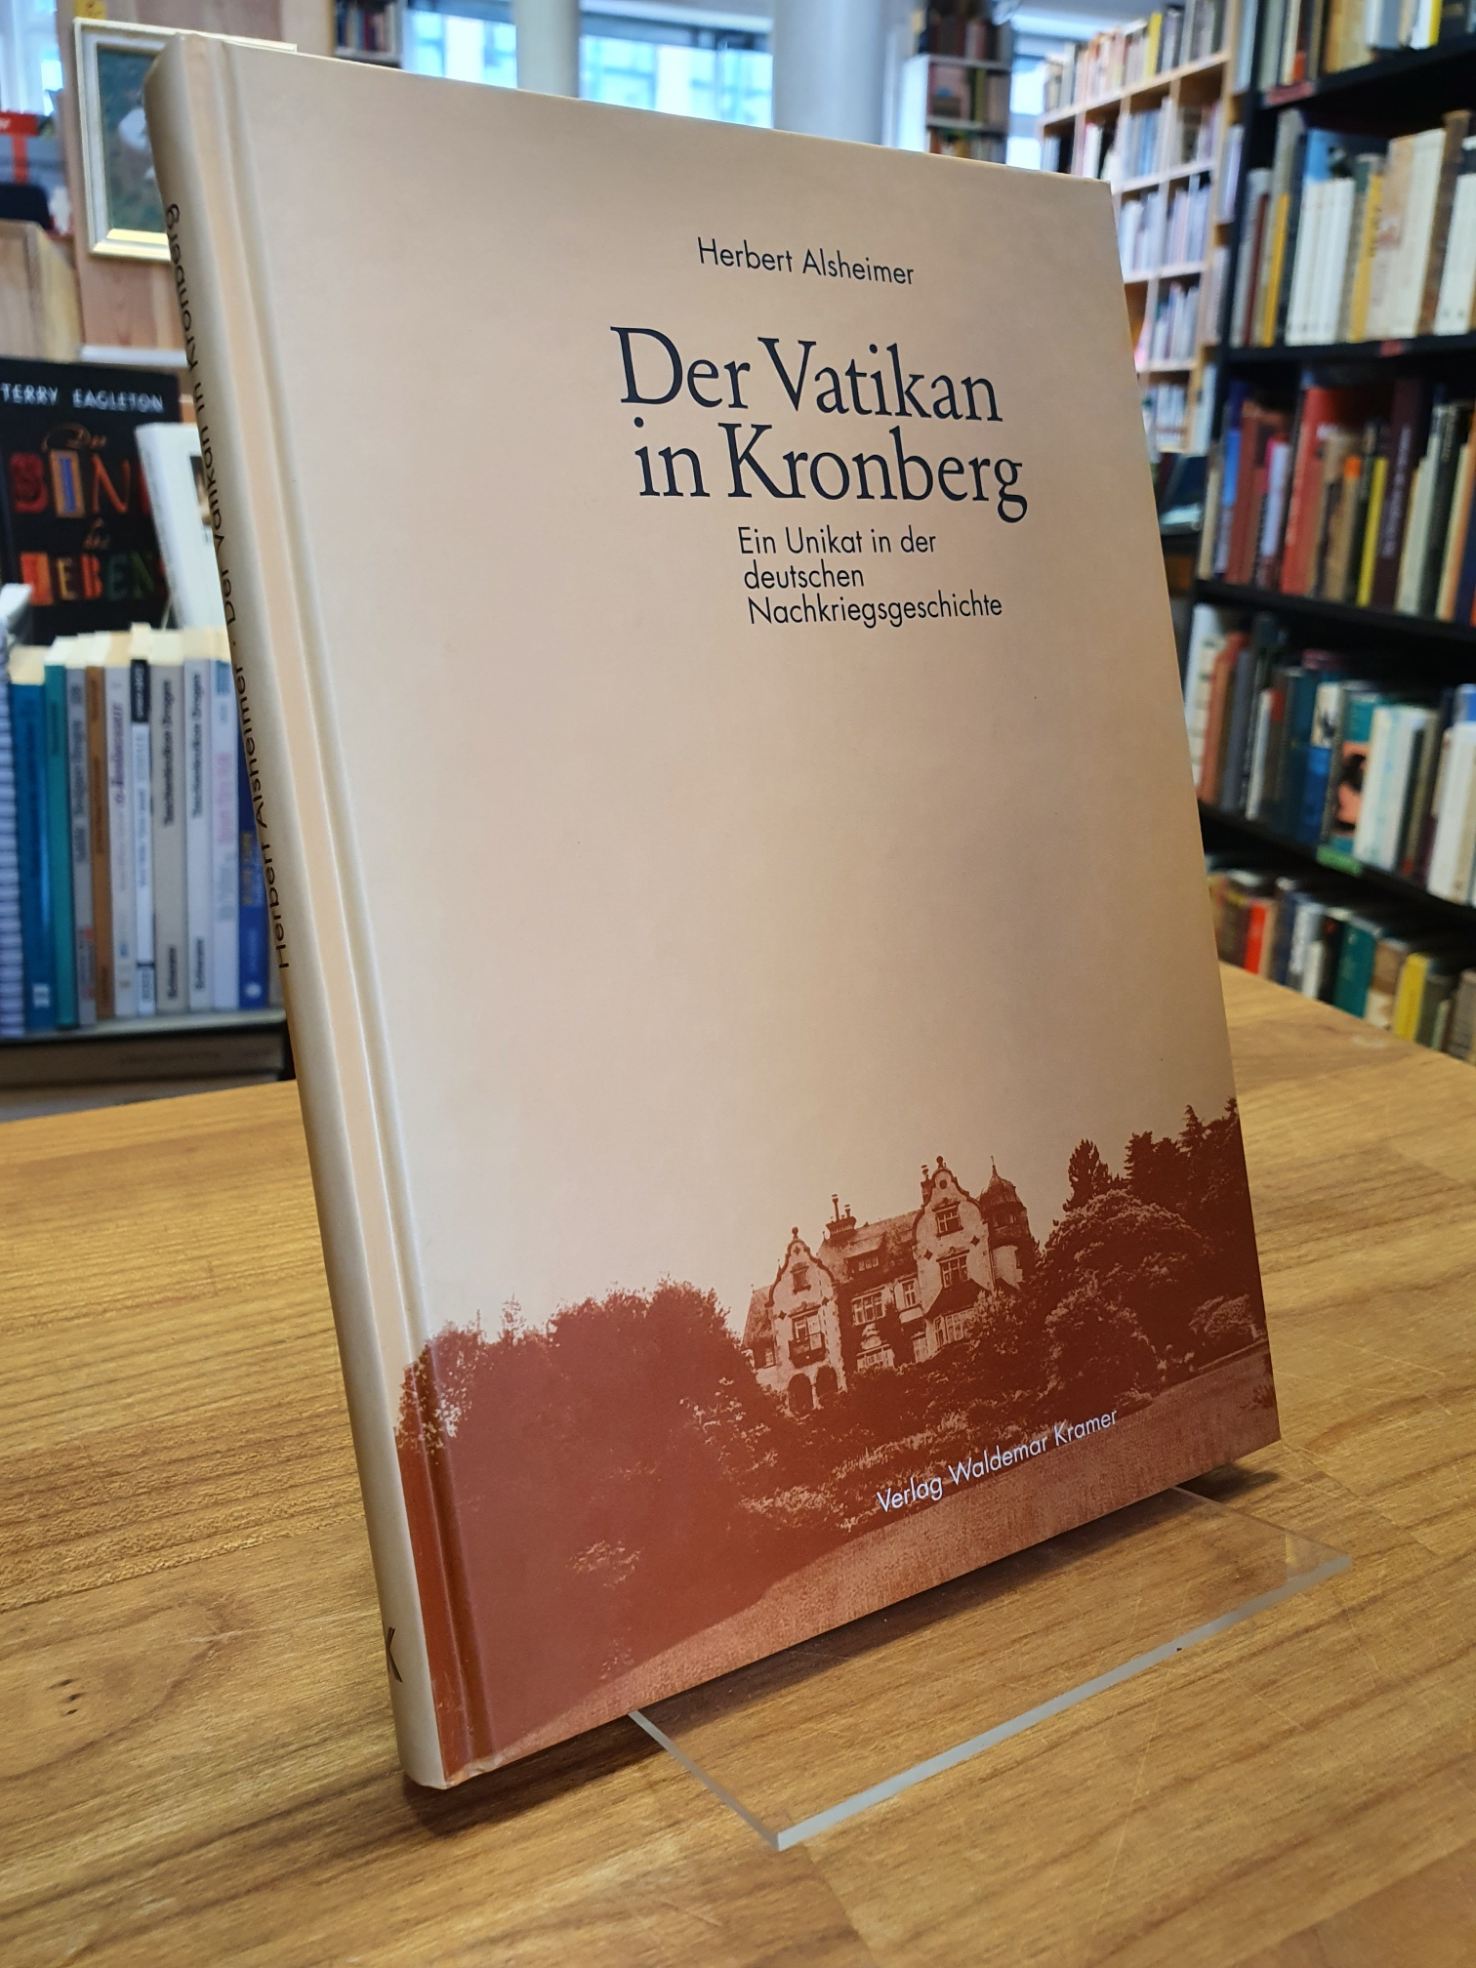 Kronberg / Alsheimer, Der Vatikan in Kronberg – Ein Unikat in der deutschen Nach